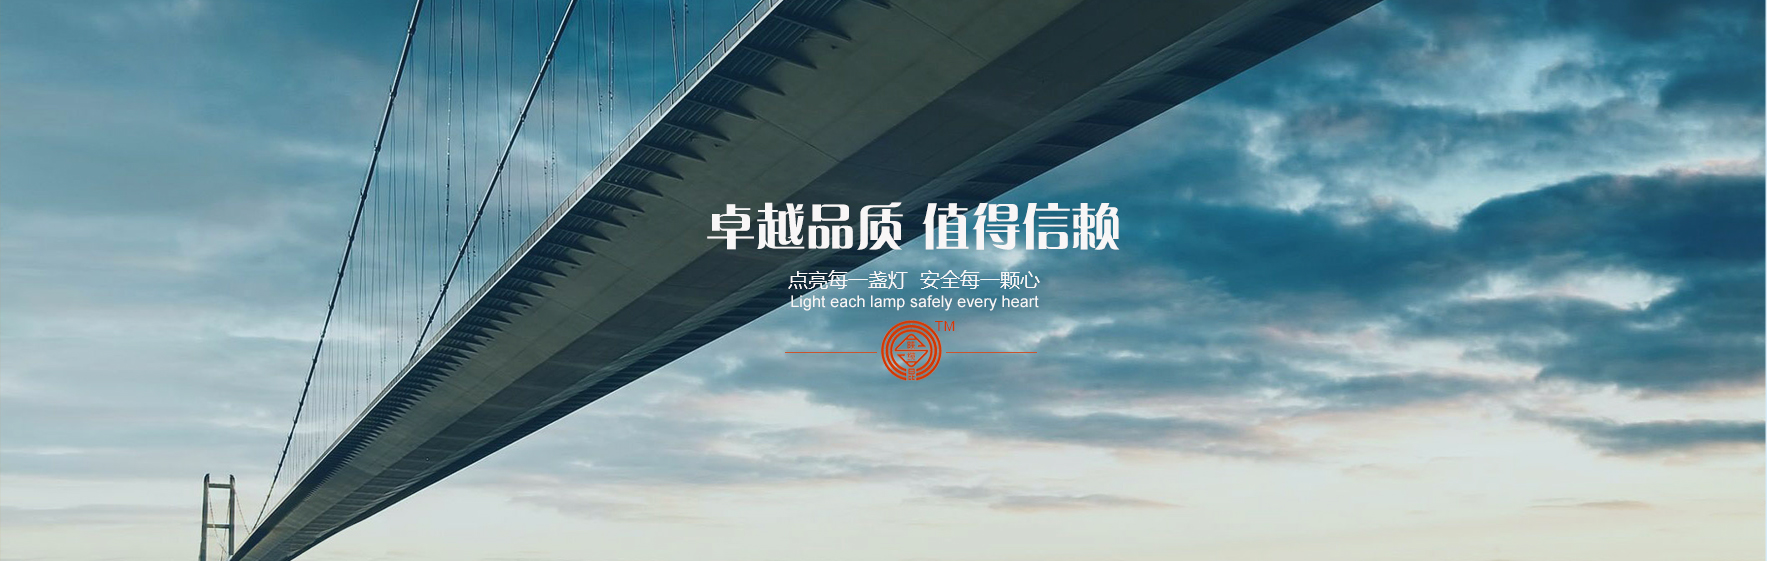 凯发网站·(china)集团 | 科技改变生活_image2114